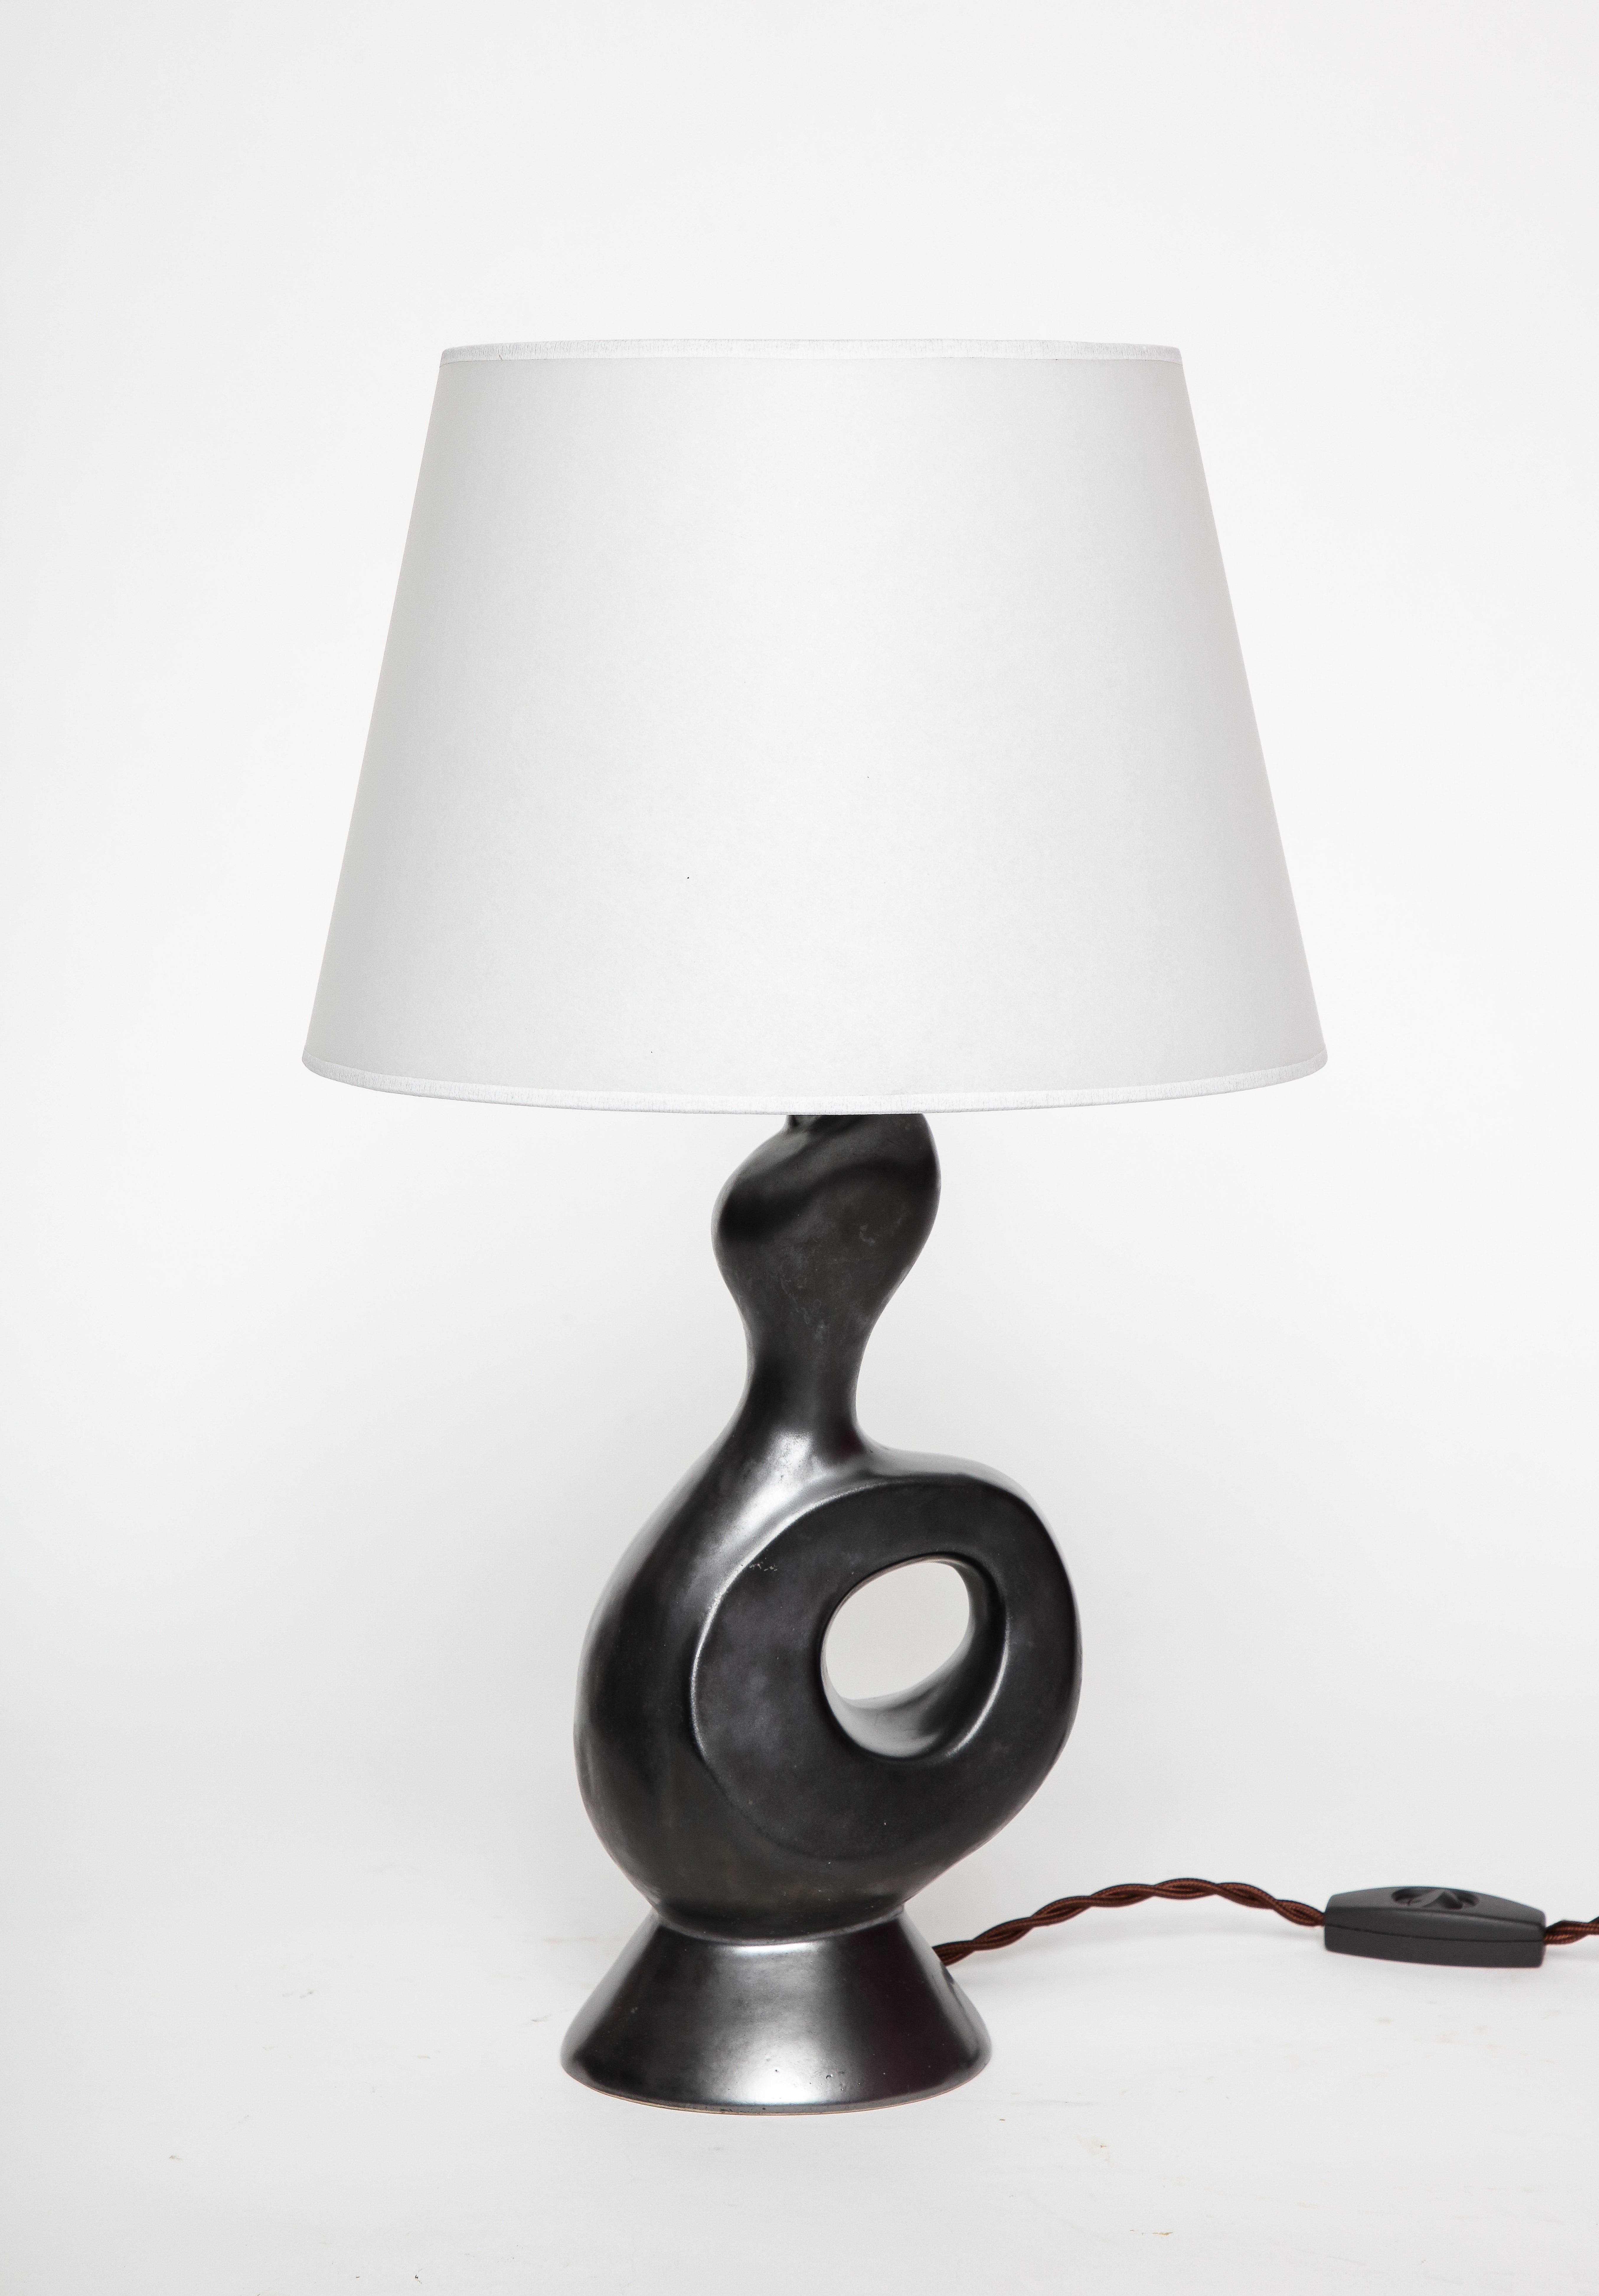 Gil Angoloni, 'Bird' Schwarz glasierte Keramiklampe mit Pergamentschirm. Frankreich, ca. 1950, signiert

Orleans Steingut, Frankreich

